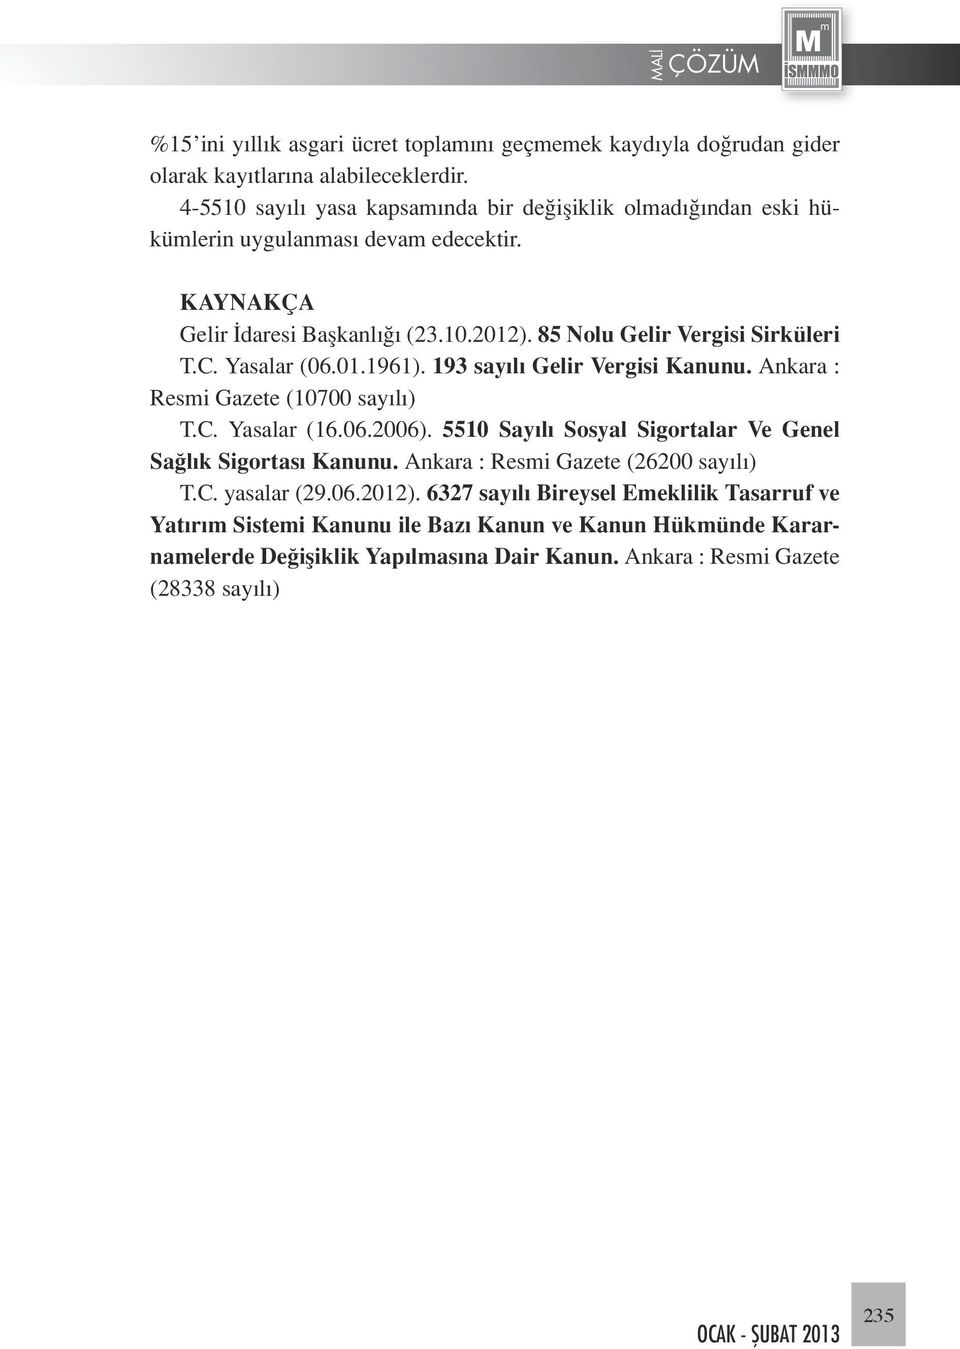 85 Nolu Gelir Vergisi Sirküleri T.C. Yasalar (06.01.1961). 193 sayılı Gelir Vergisi Kanunu. Ankara : Resmi Gazete (10700 sayılı) T.C. Yasalar (16.06.2006).